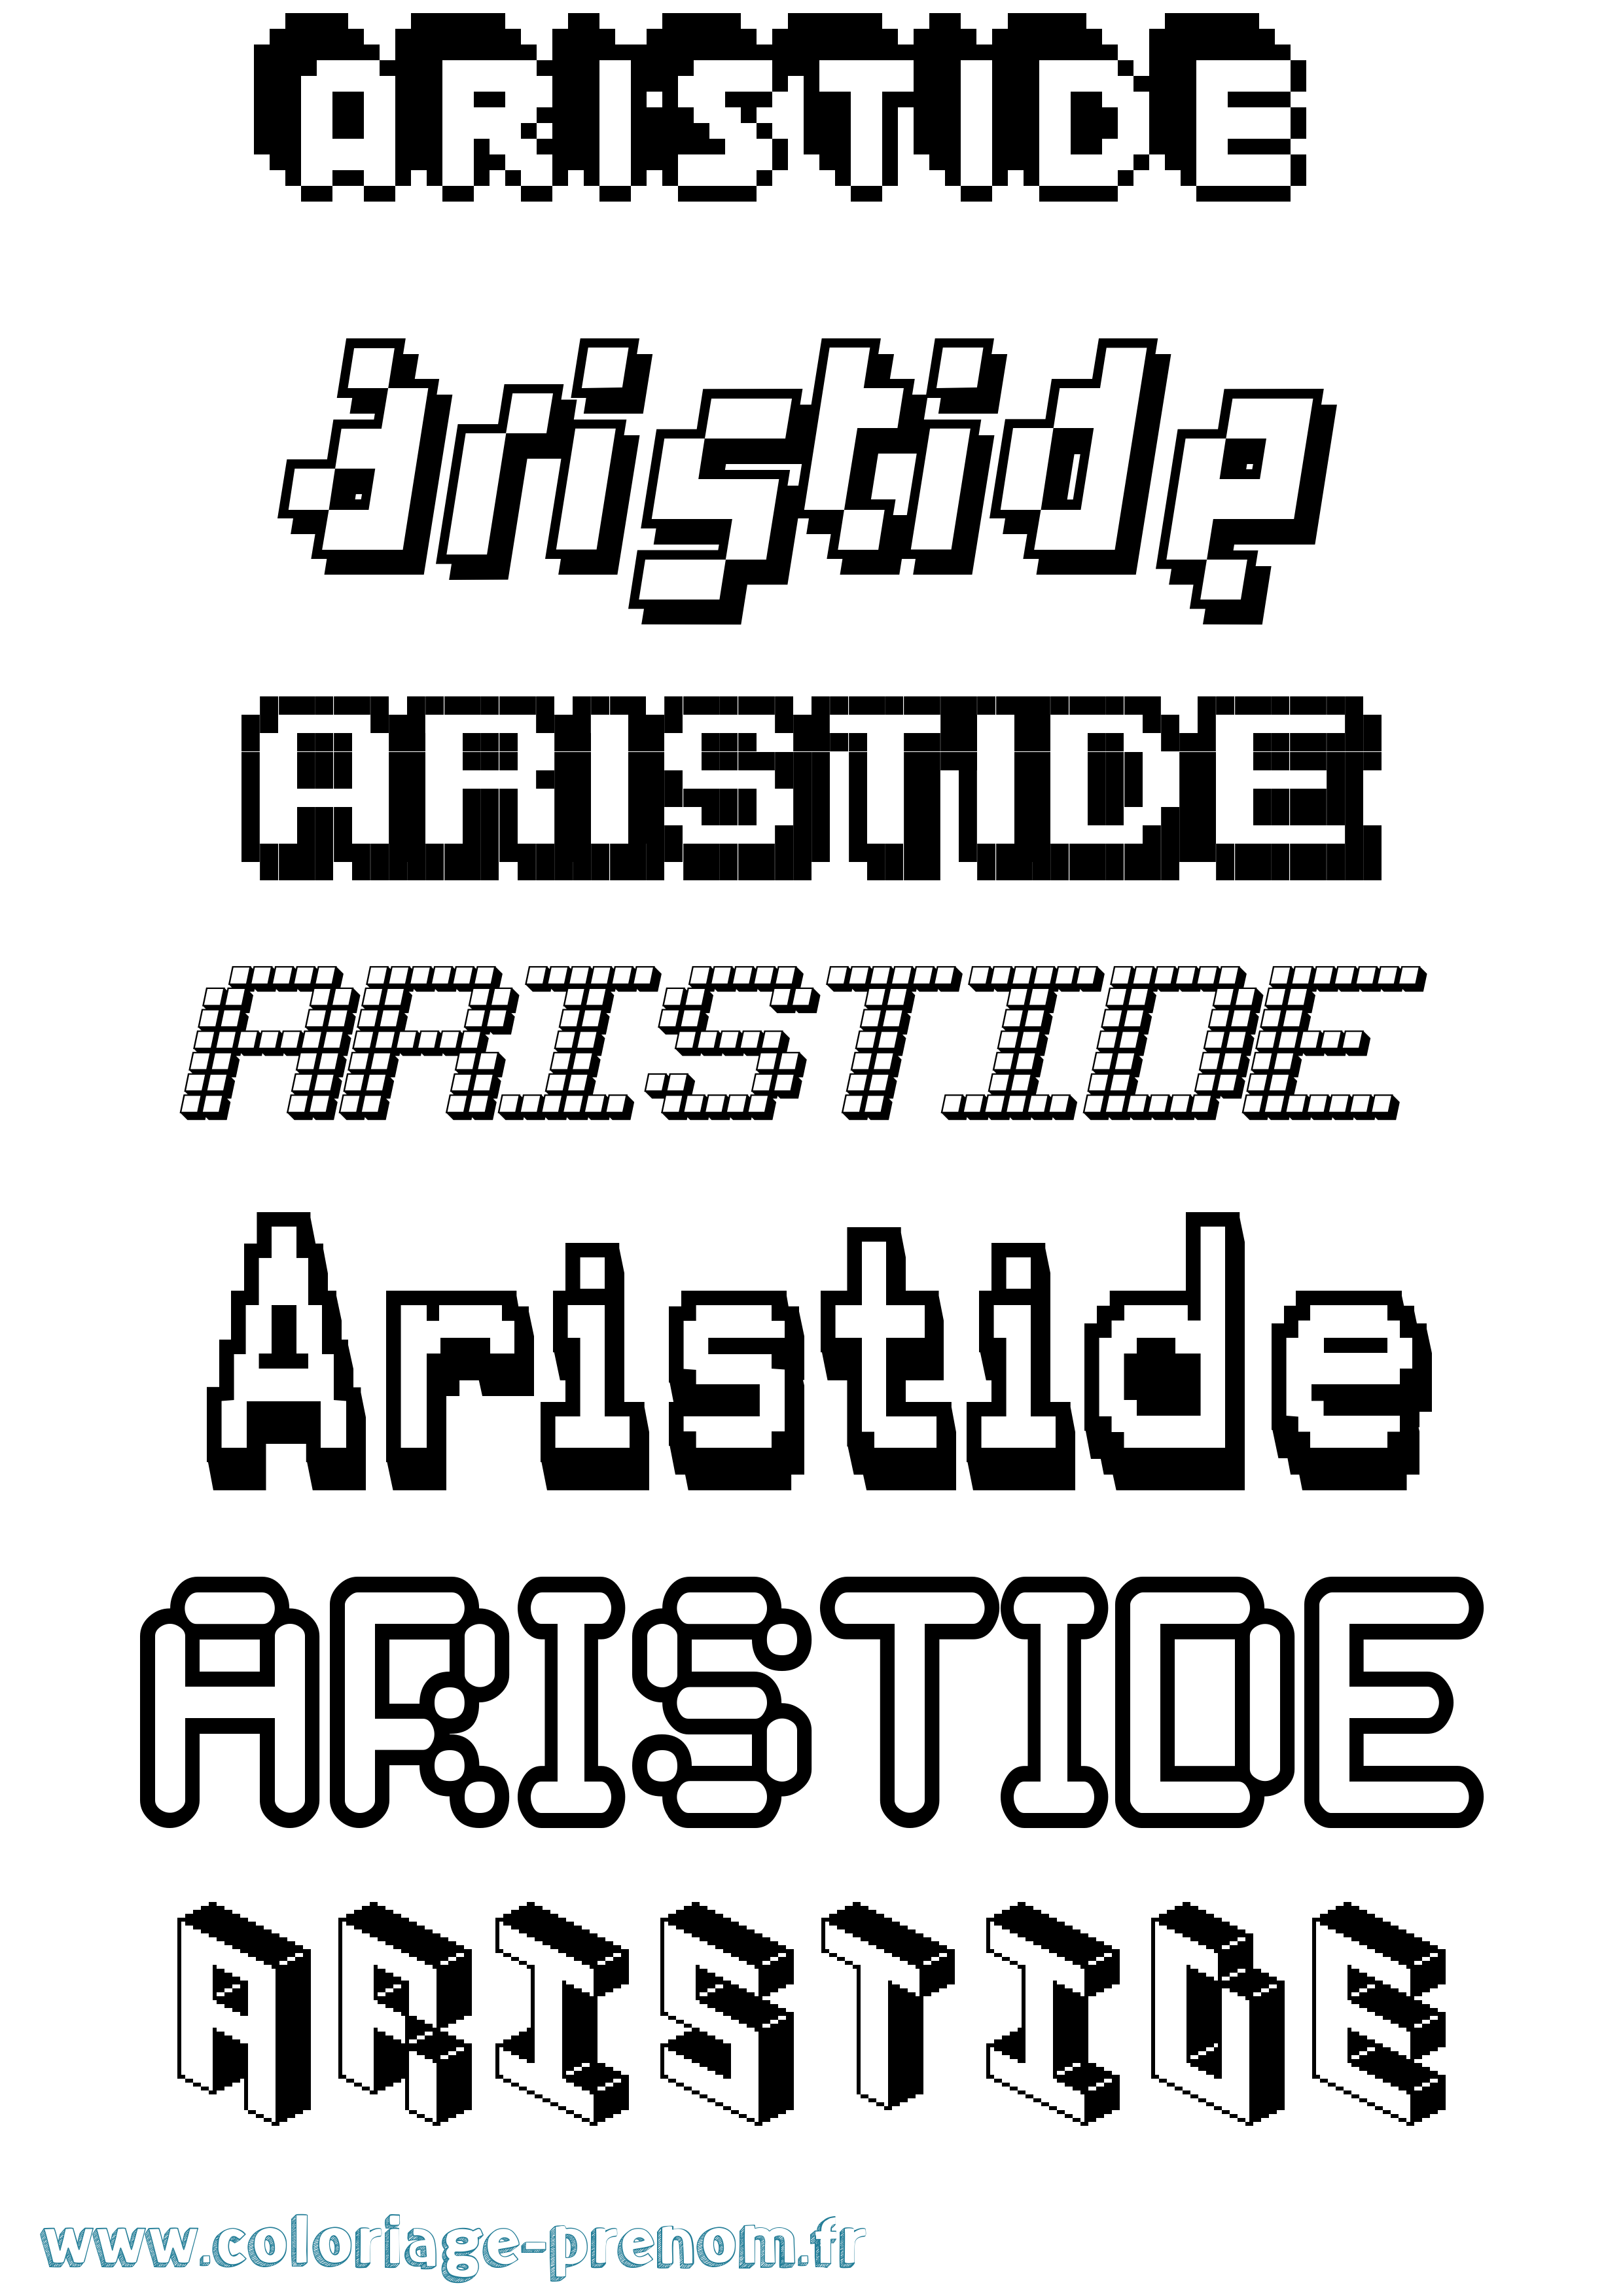 Coloriage prénom Aristide Pixel